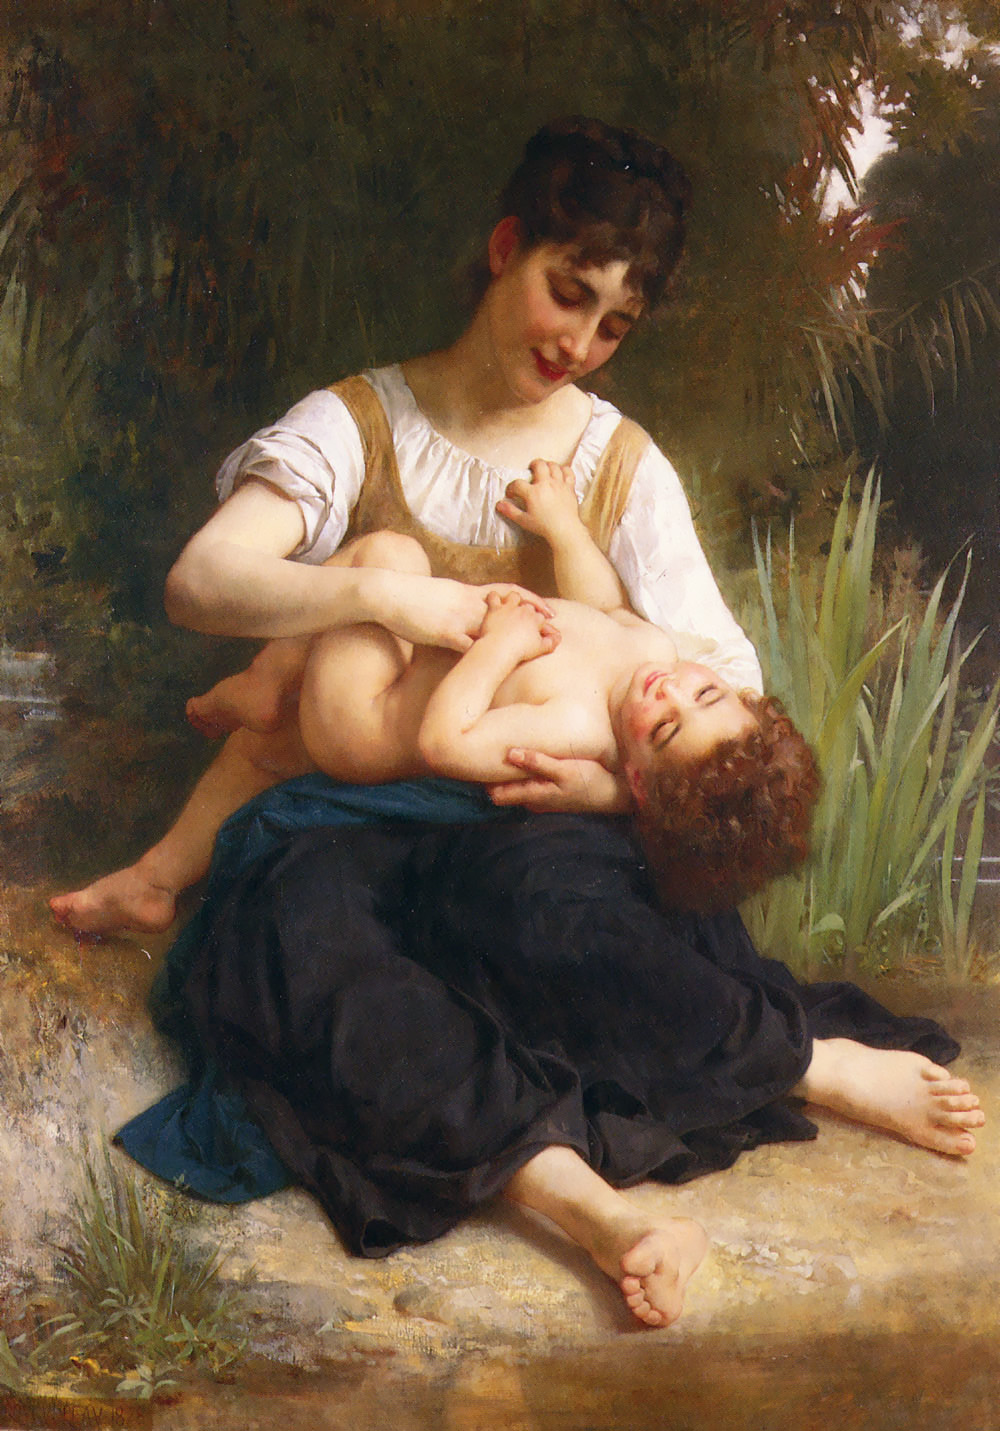 Адольф Вильям Бугро. "Счастье материнства". 1878. Частная коллекция.